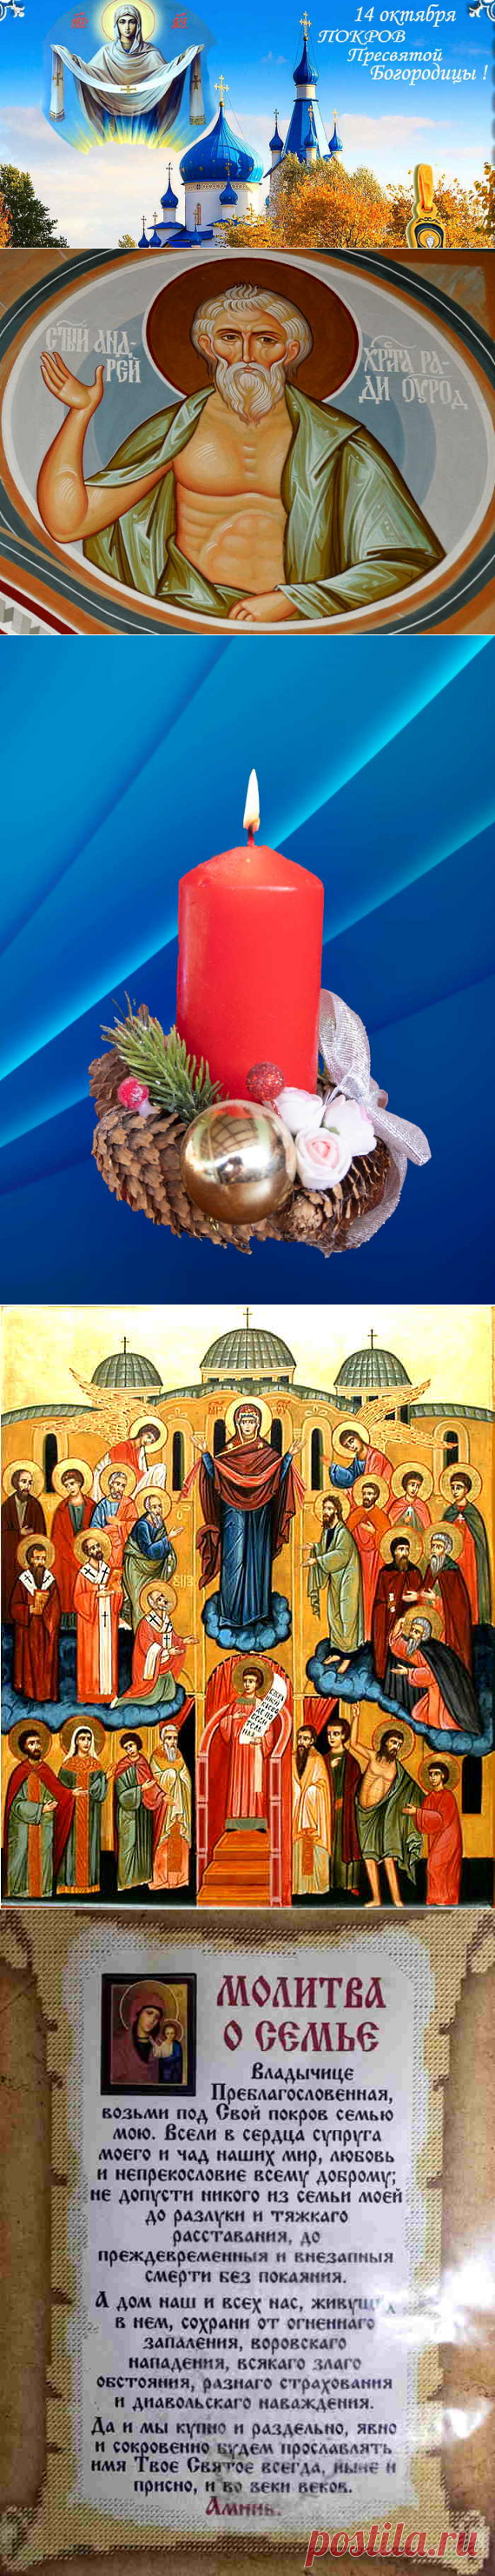 Покрова Пресвятой Богородицы история праздника и традиции церкви